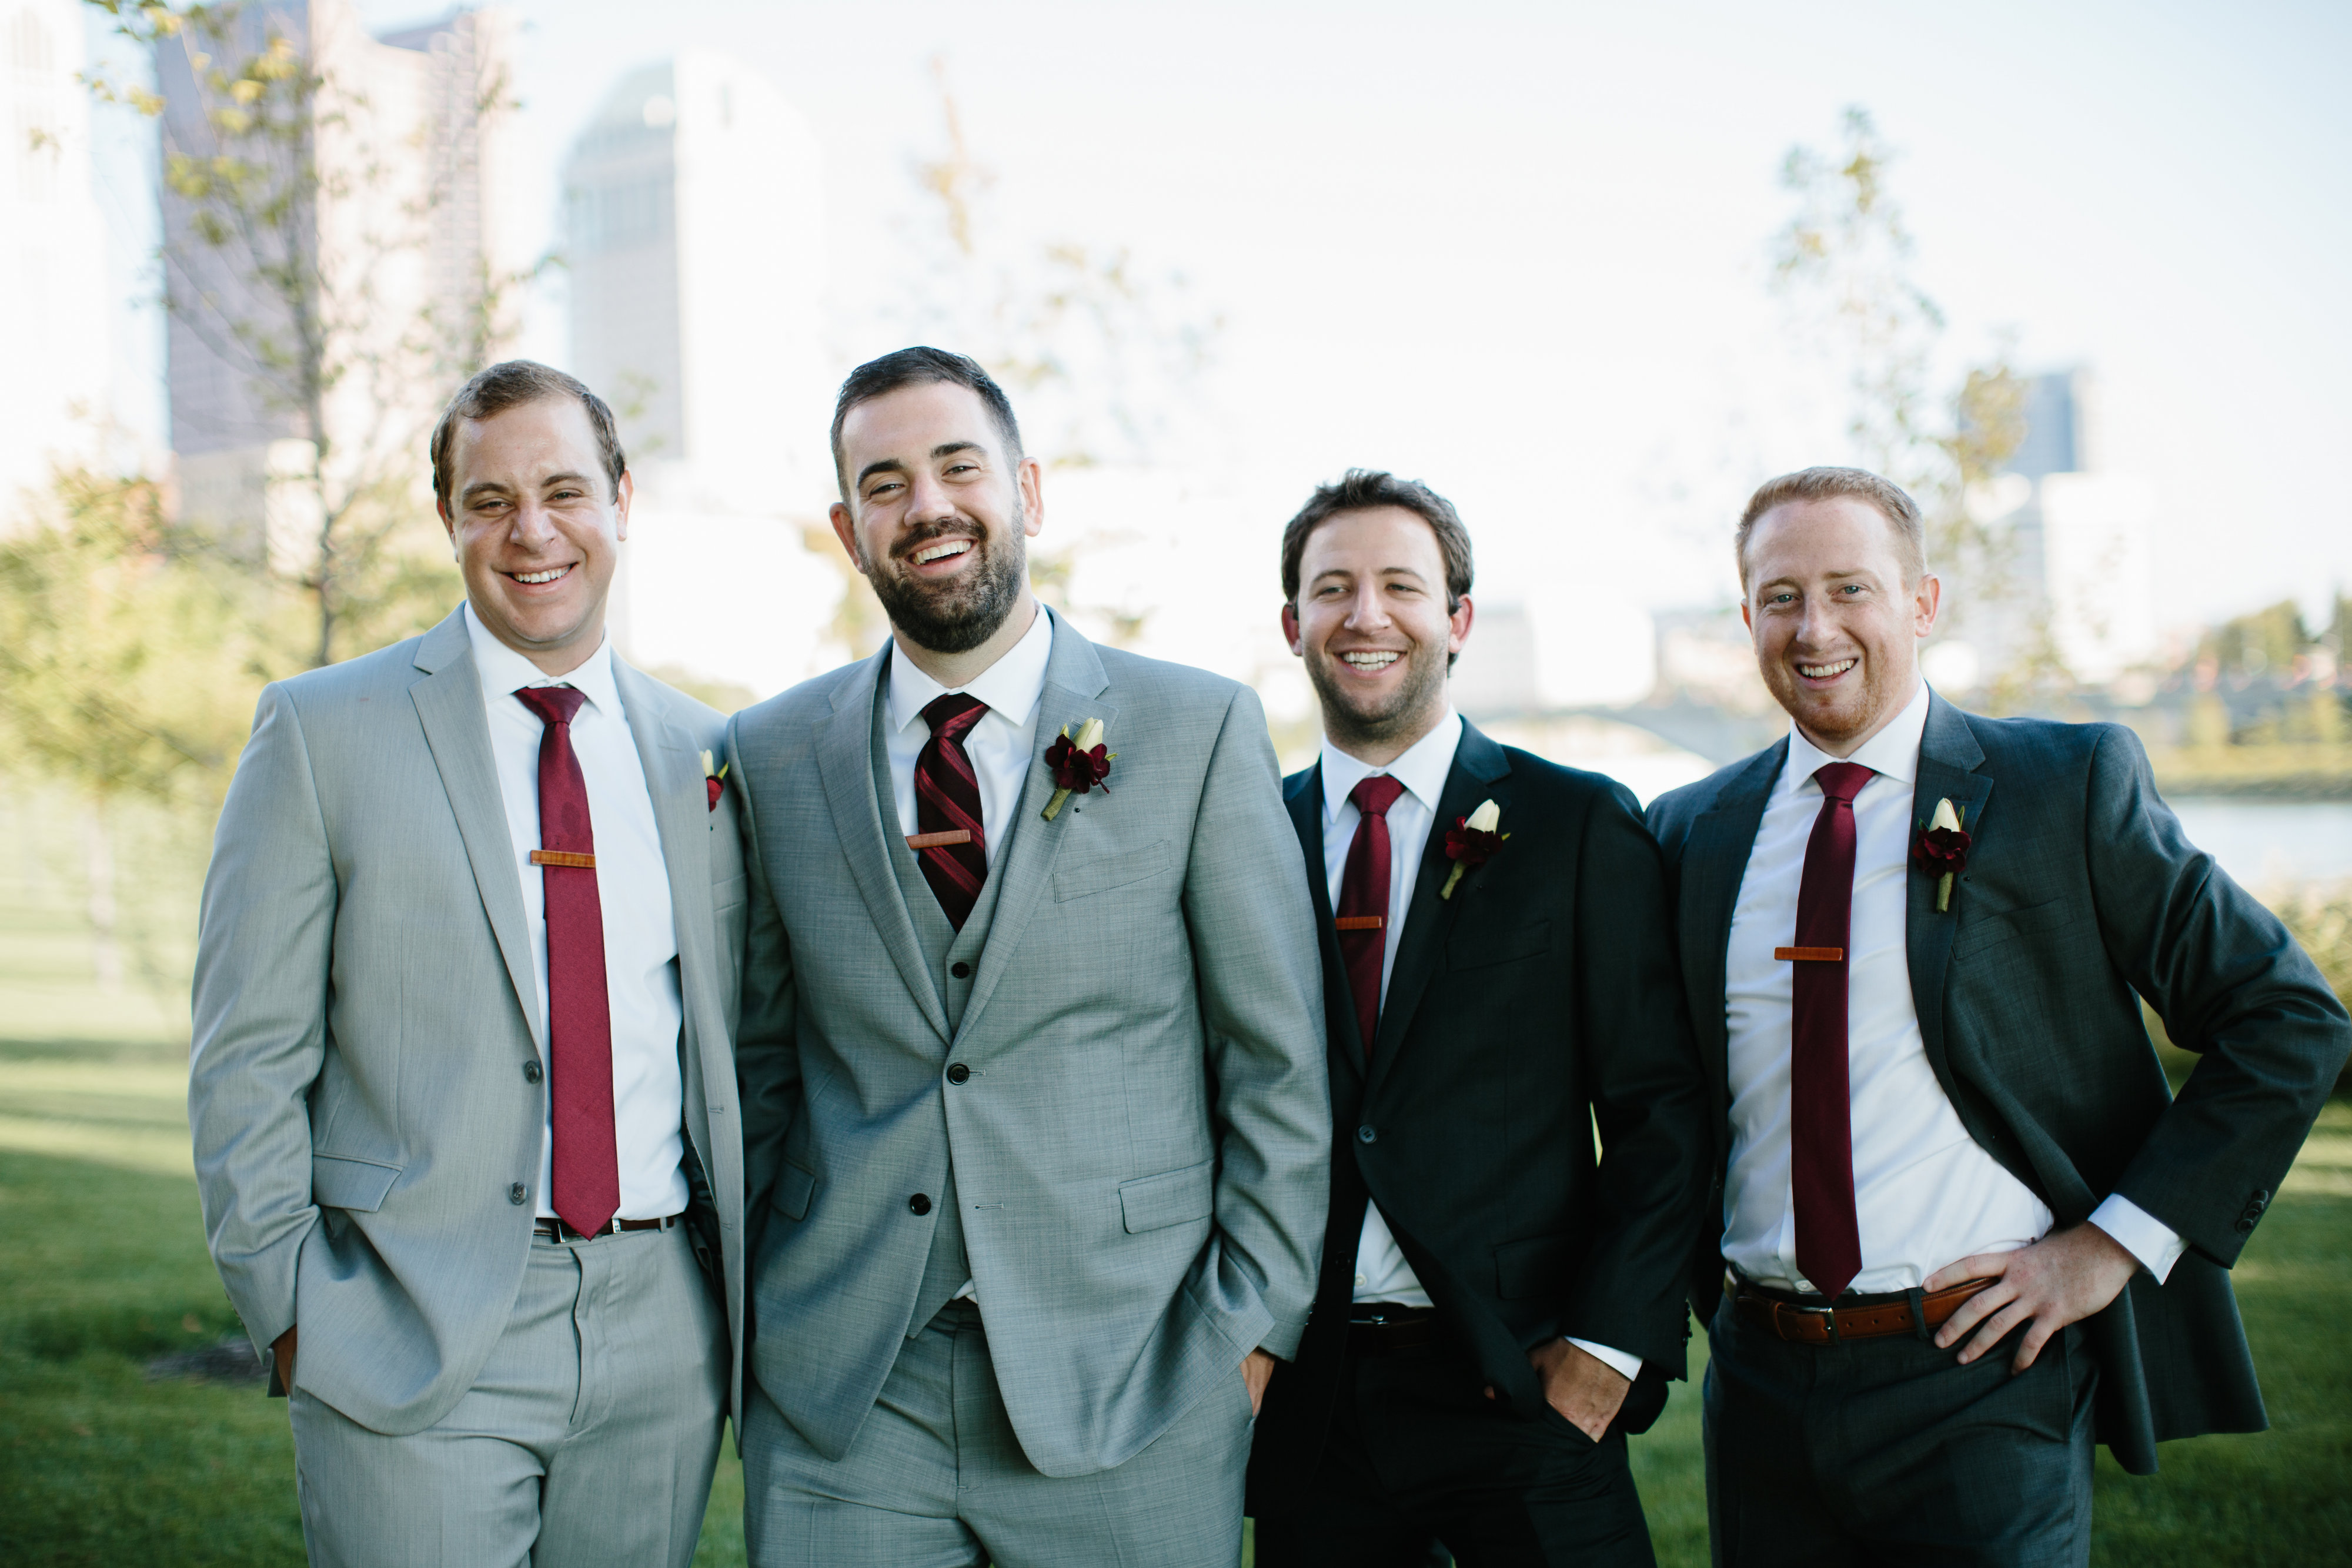 groomsmen in grey suits and maroon ties